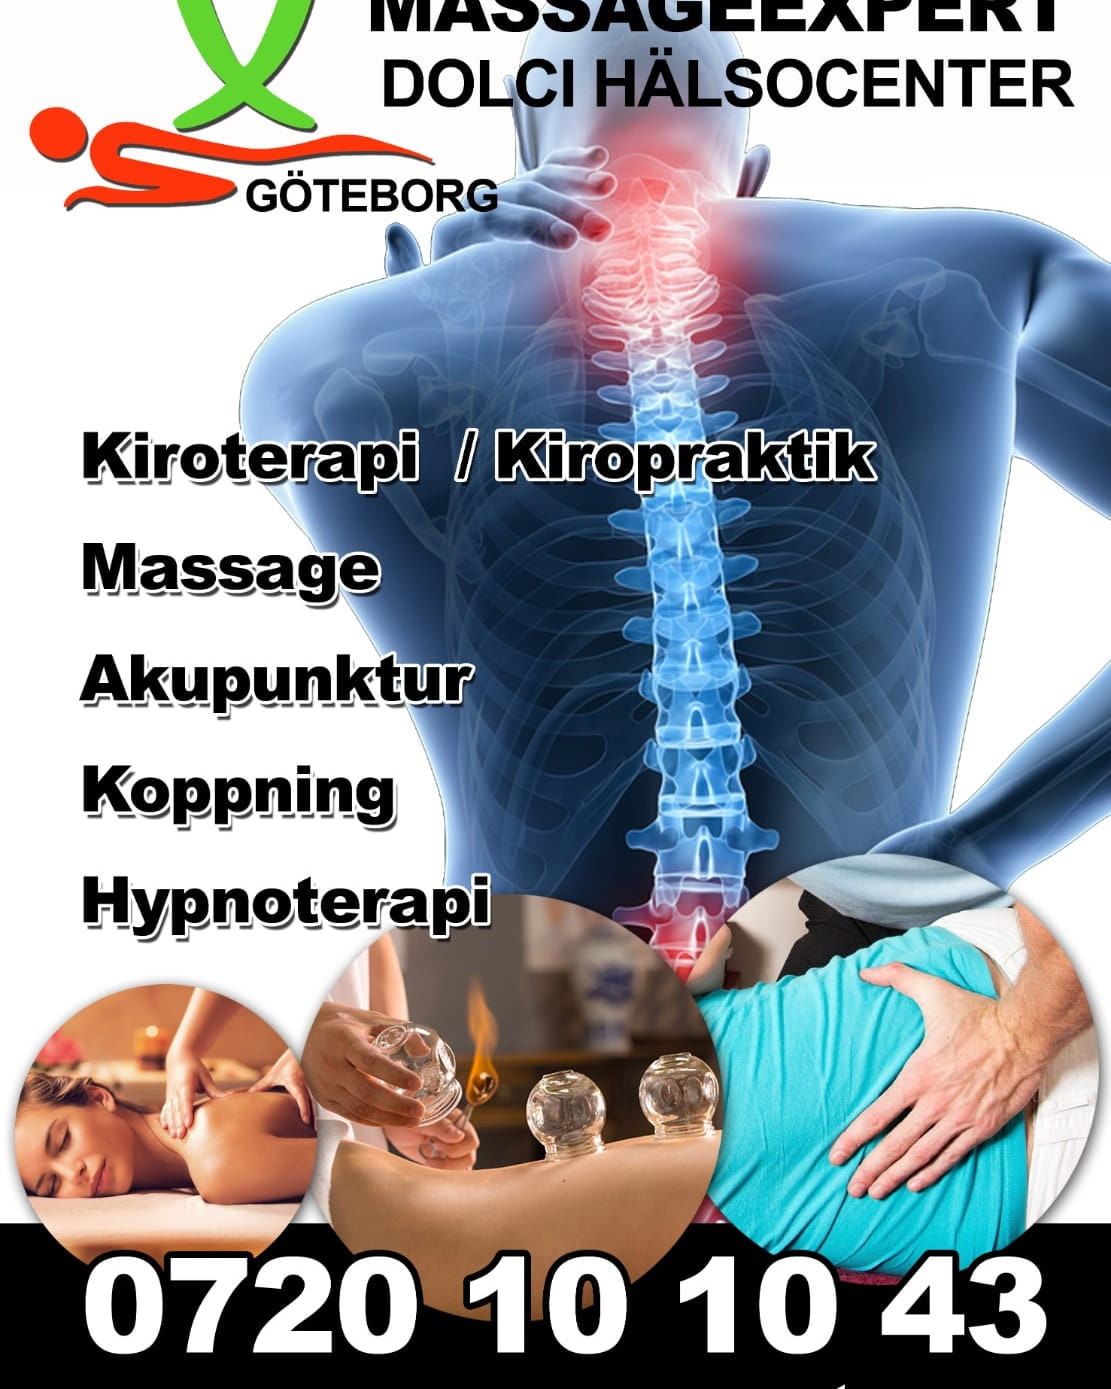 Bild från Massage Expert i Göteborg av Alex D. (2023-03-30)